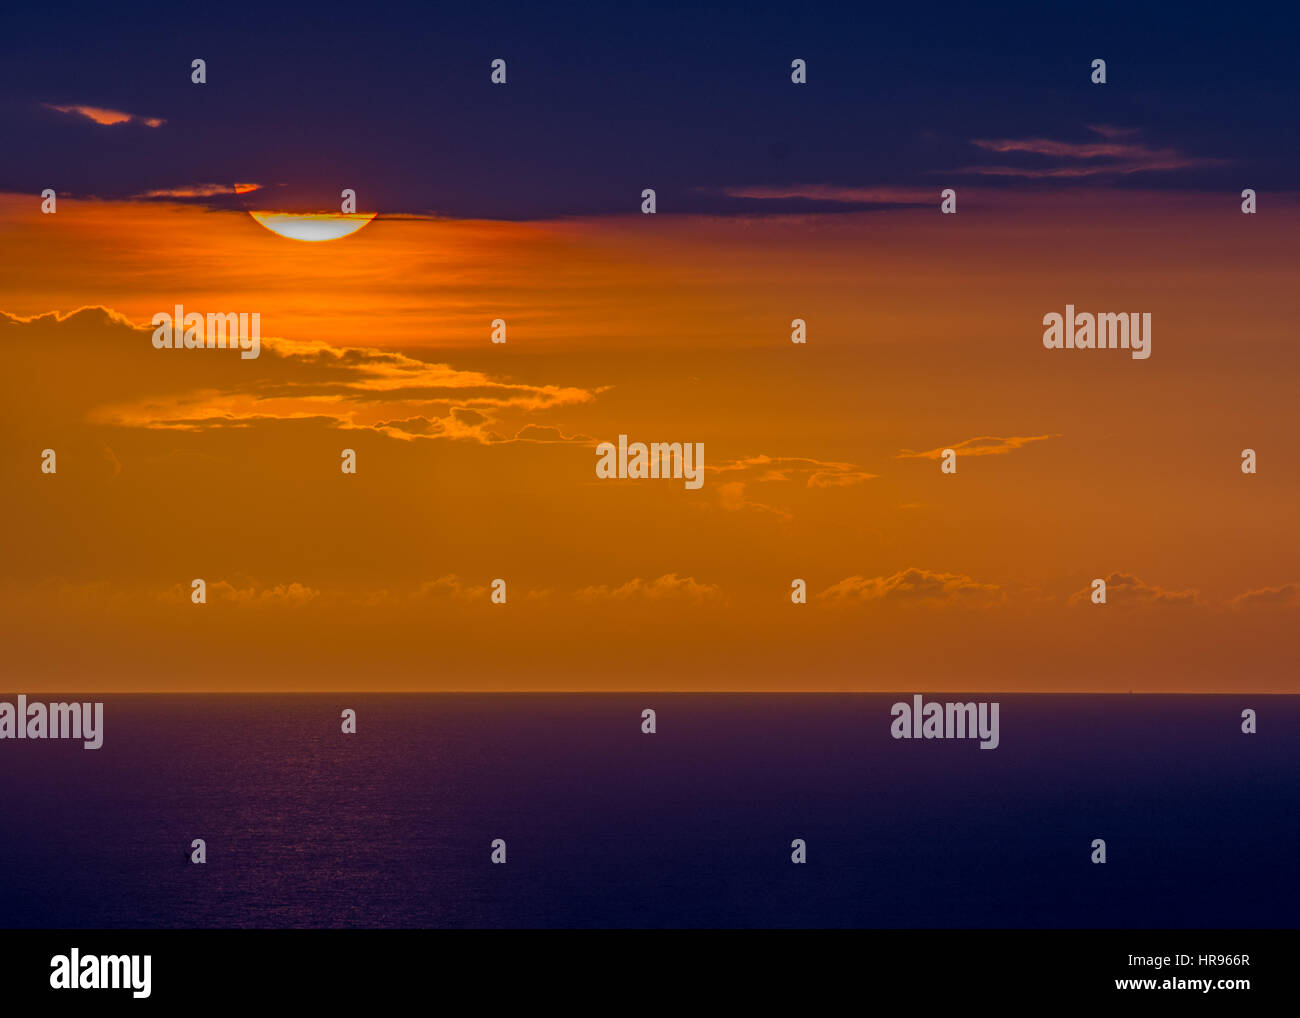 Sunset background image from the island nation of Haiti. Stock Photo